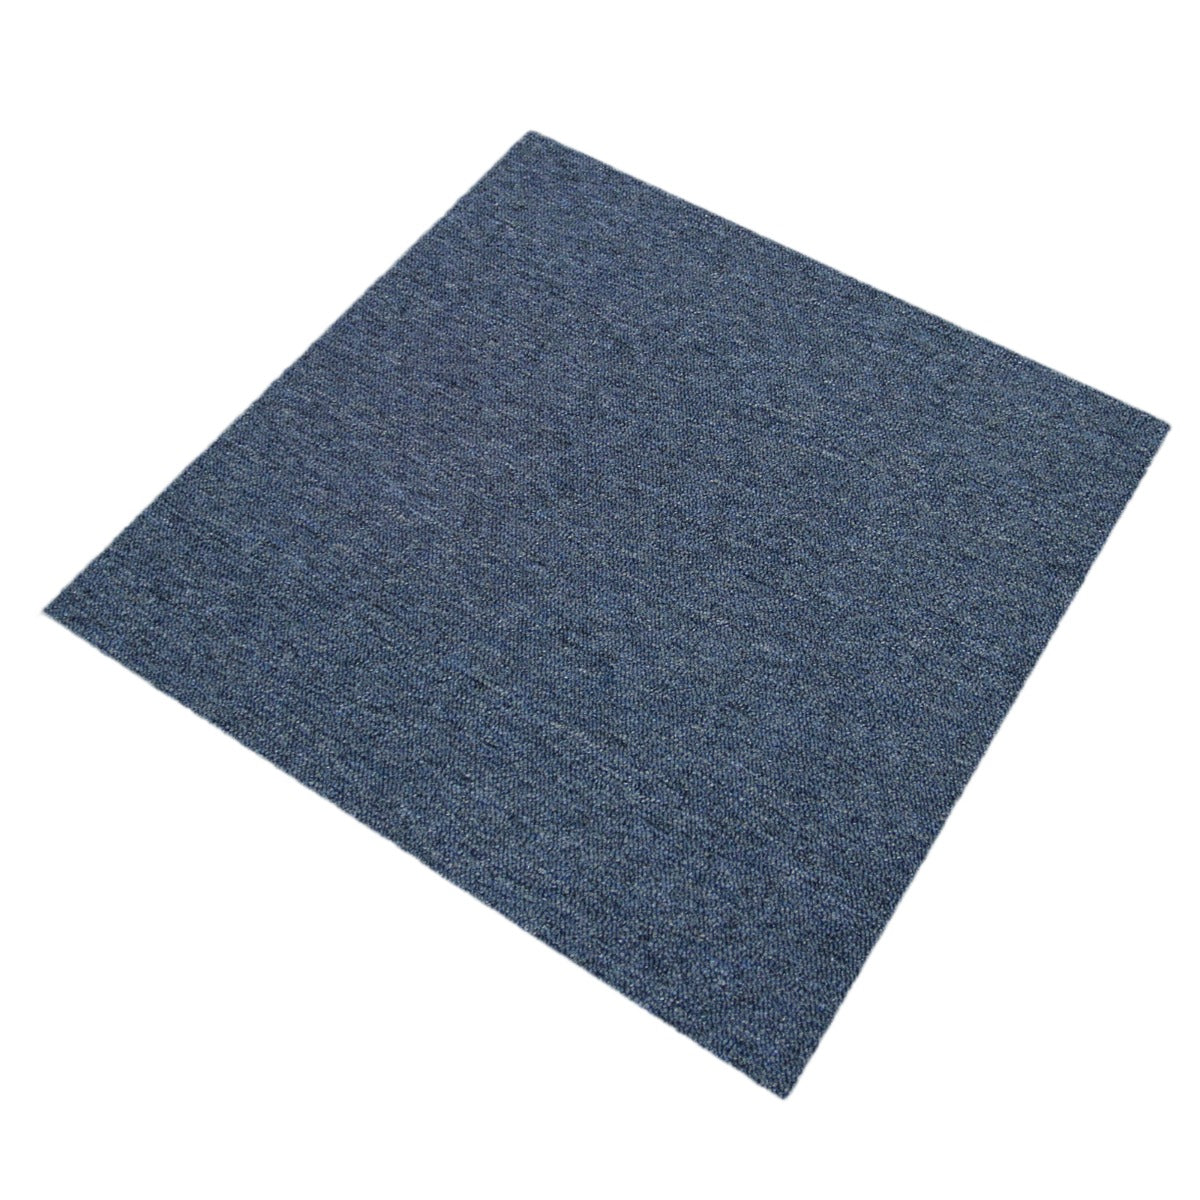 20 x Carpet Tiles 5m2 / Storm Blue